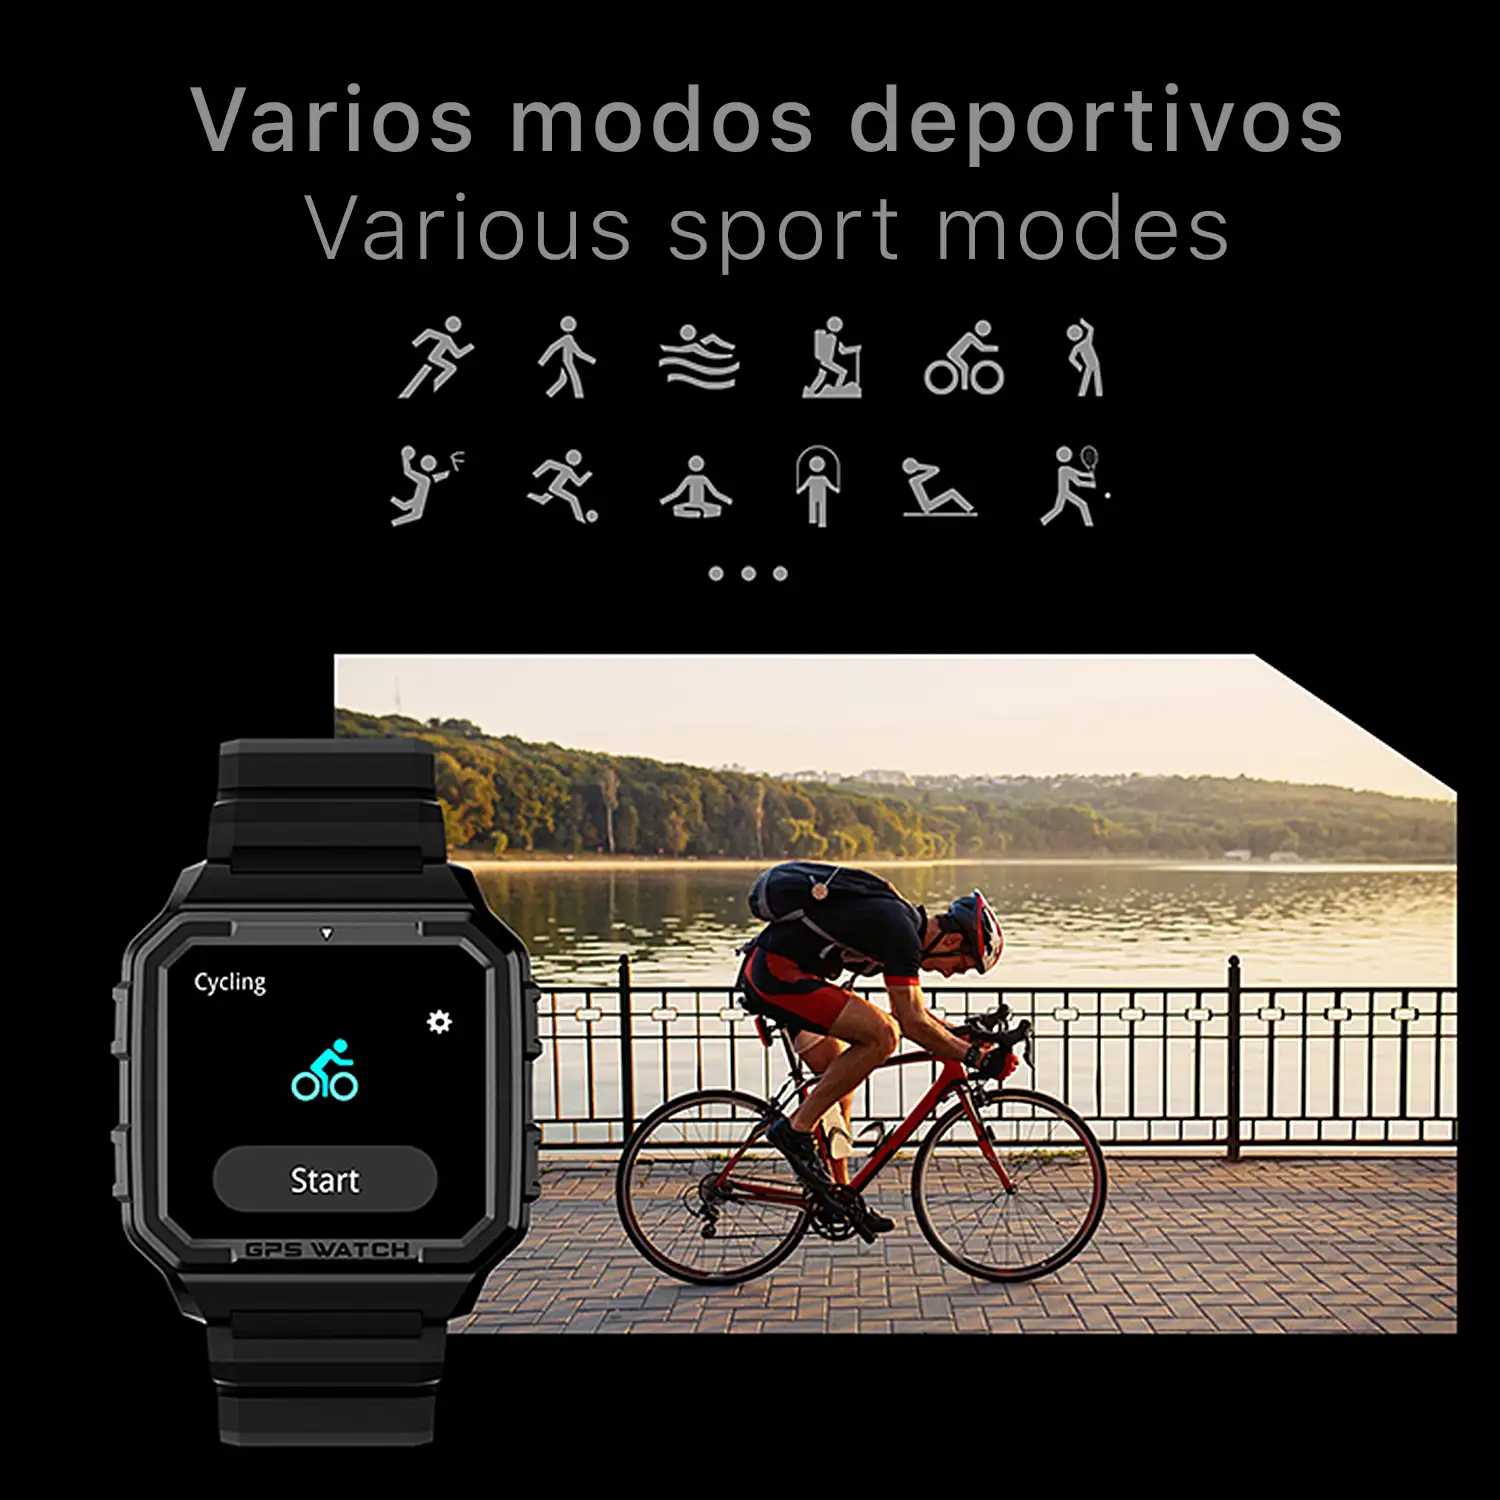 Smartwatch X2 con GPS, monitor cardiaco y de O2 en sangre, brújula. Varios modos deportivos, sumergible, notificaciones de apps.